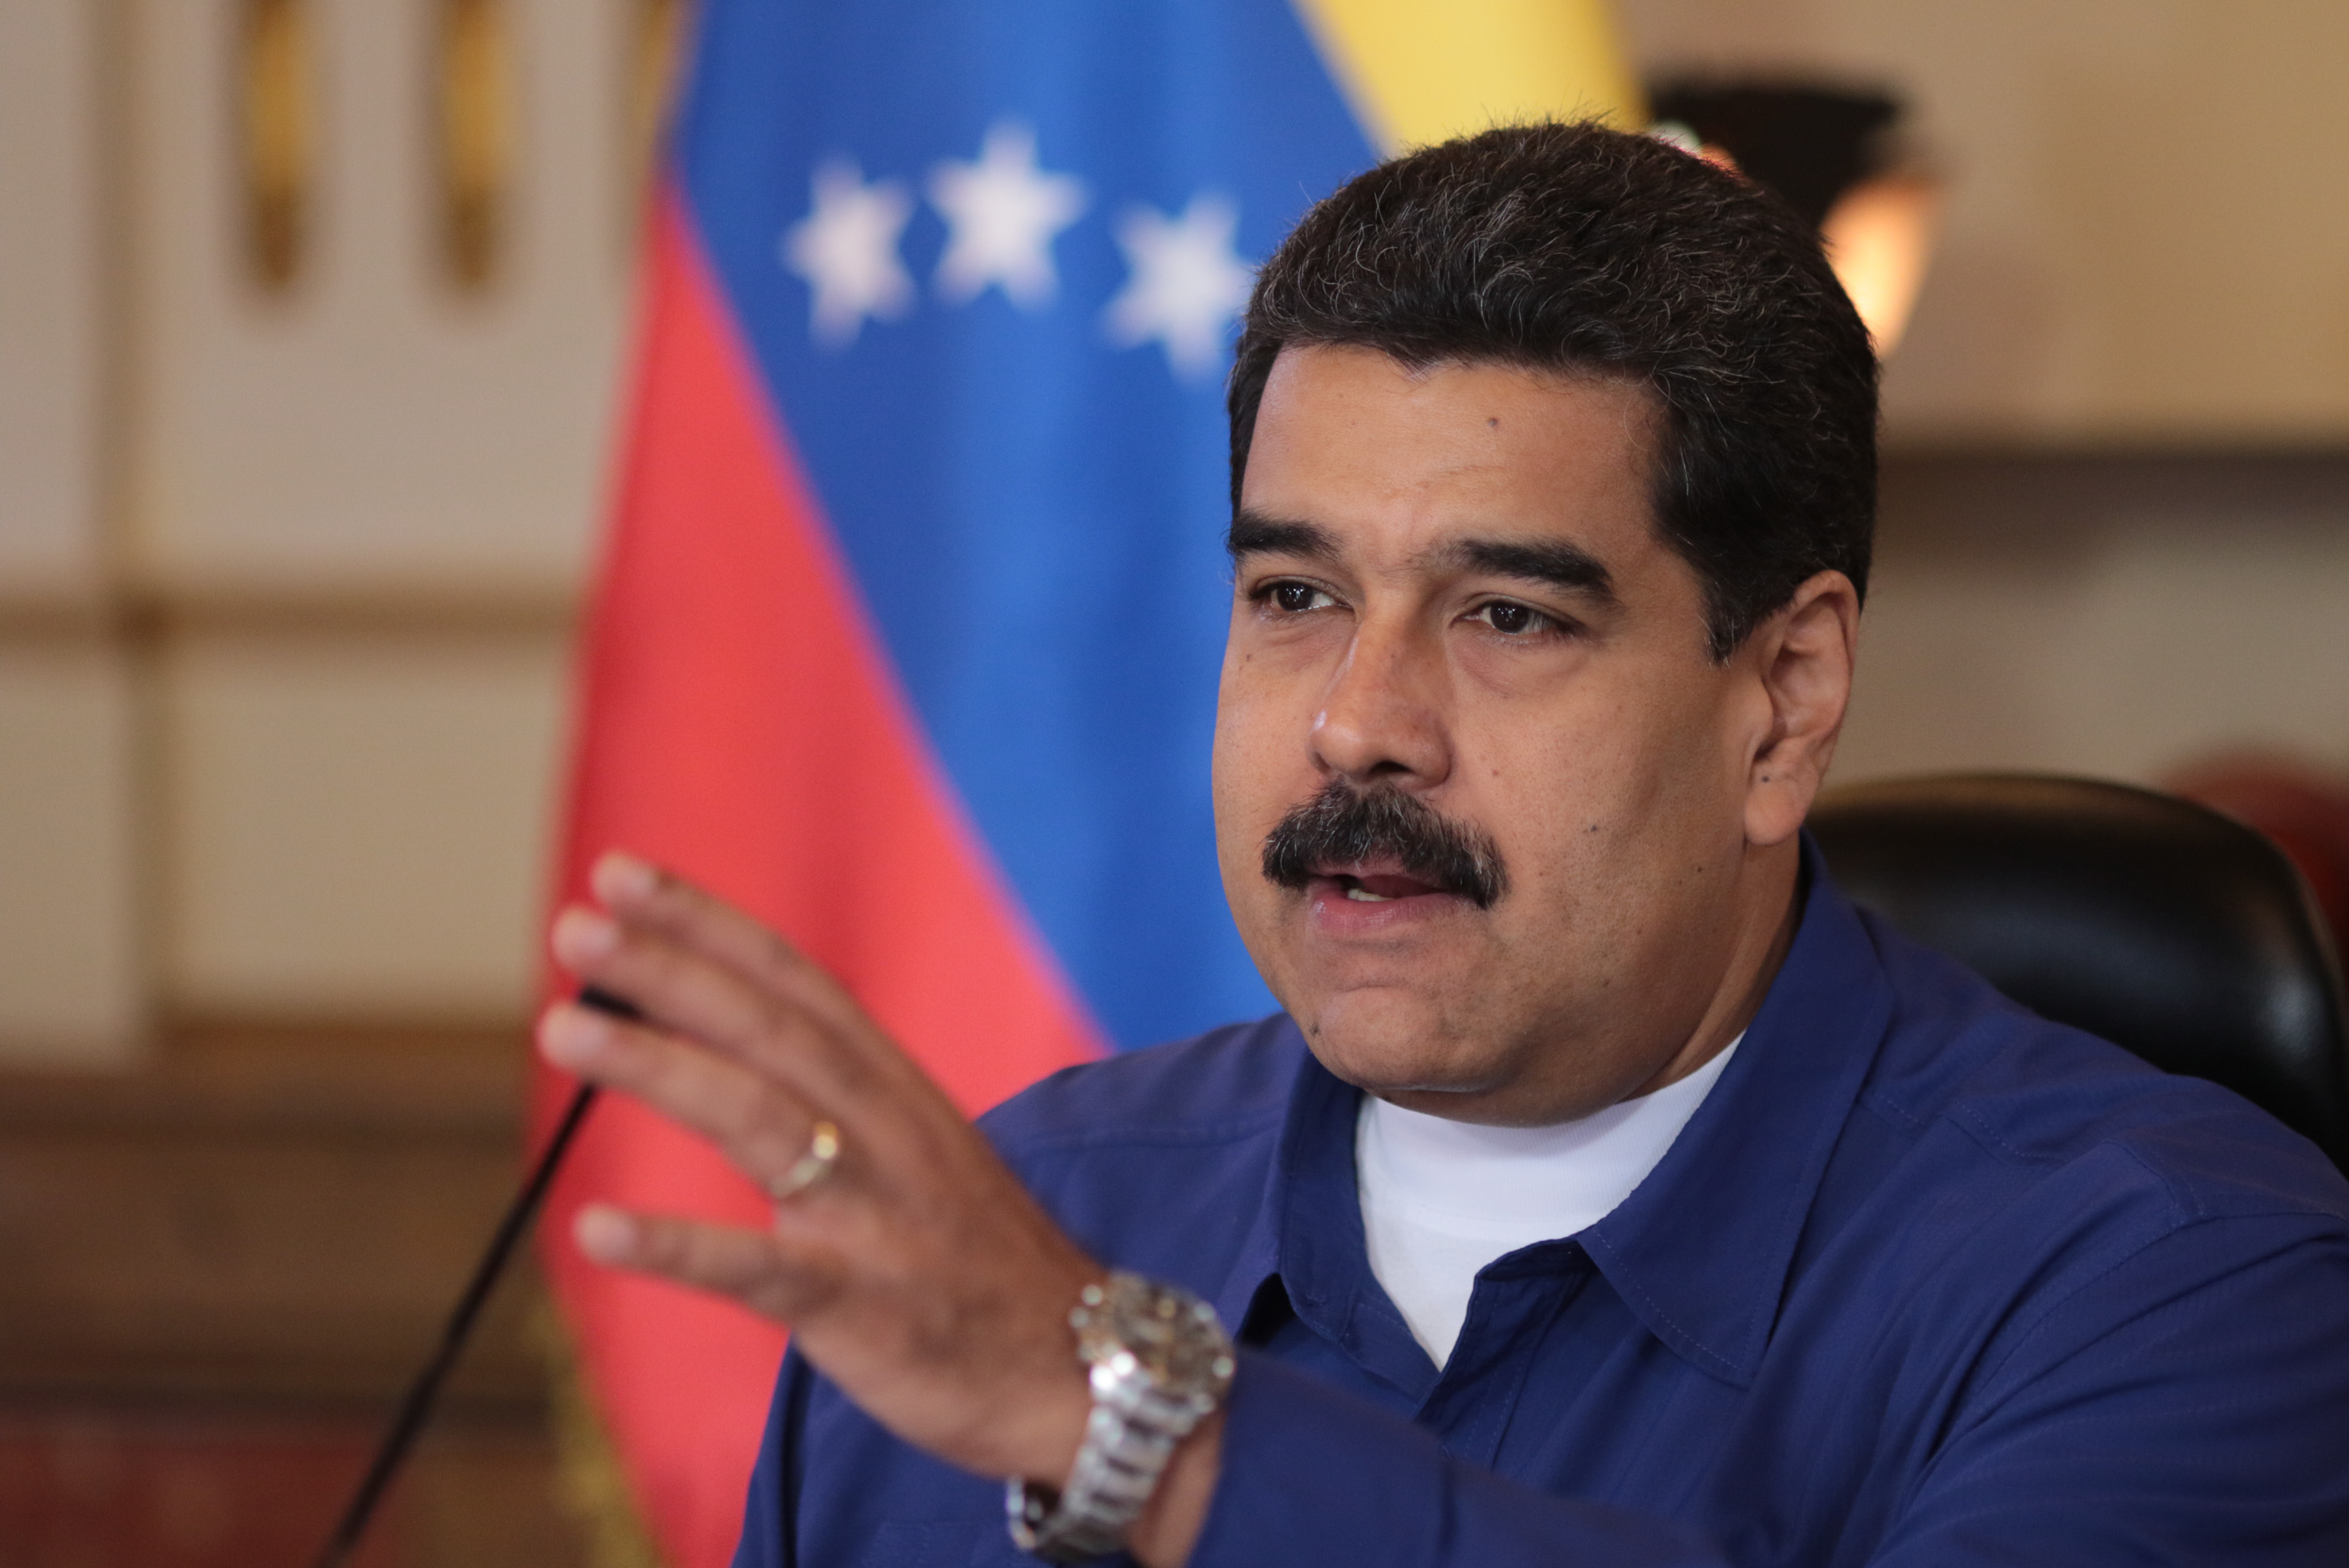 Maduro arremete contra cardenales al insinuar que “sirven al capital y perversiones del mundo” (Video)